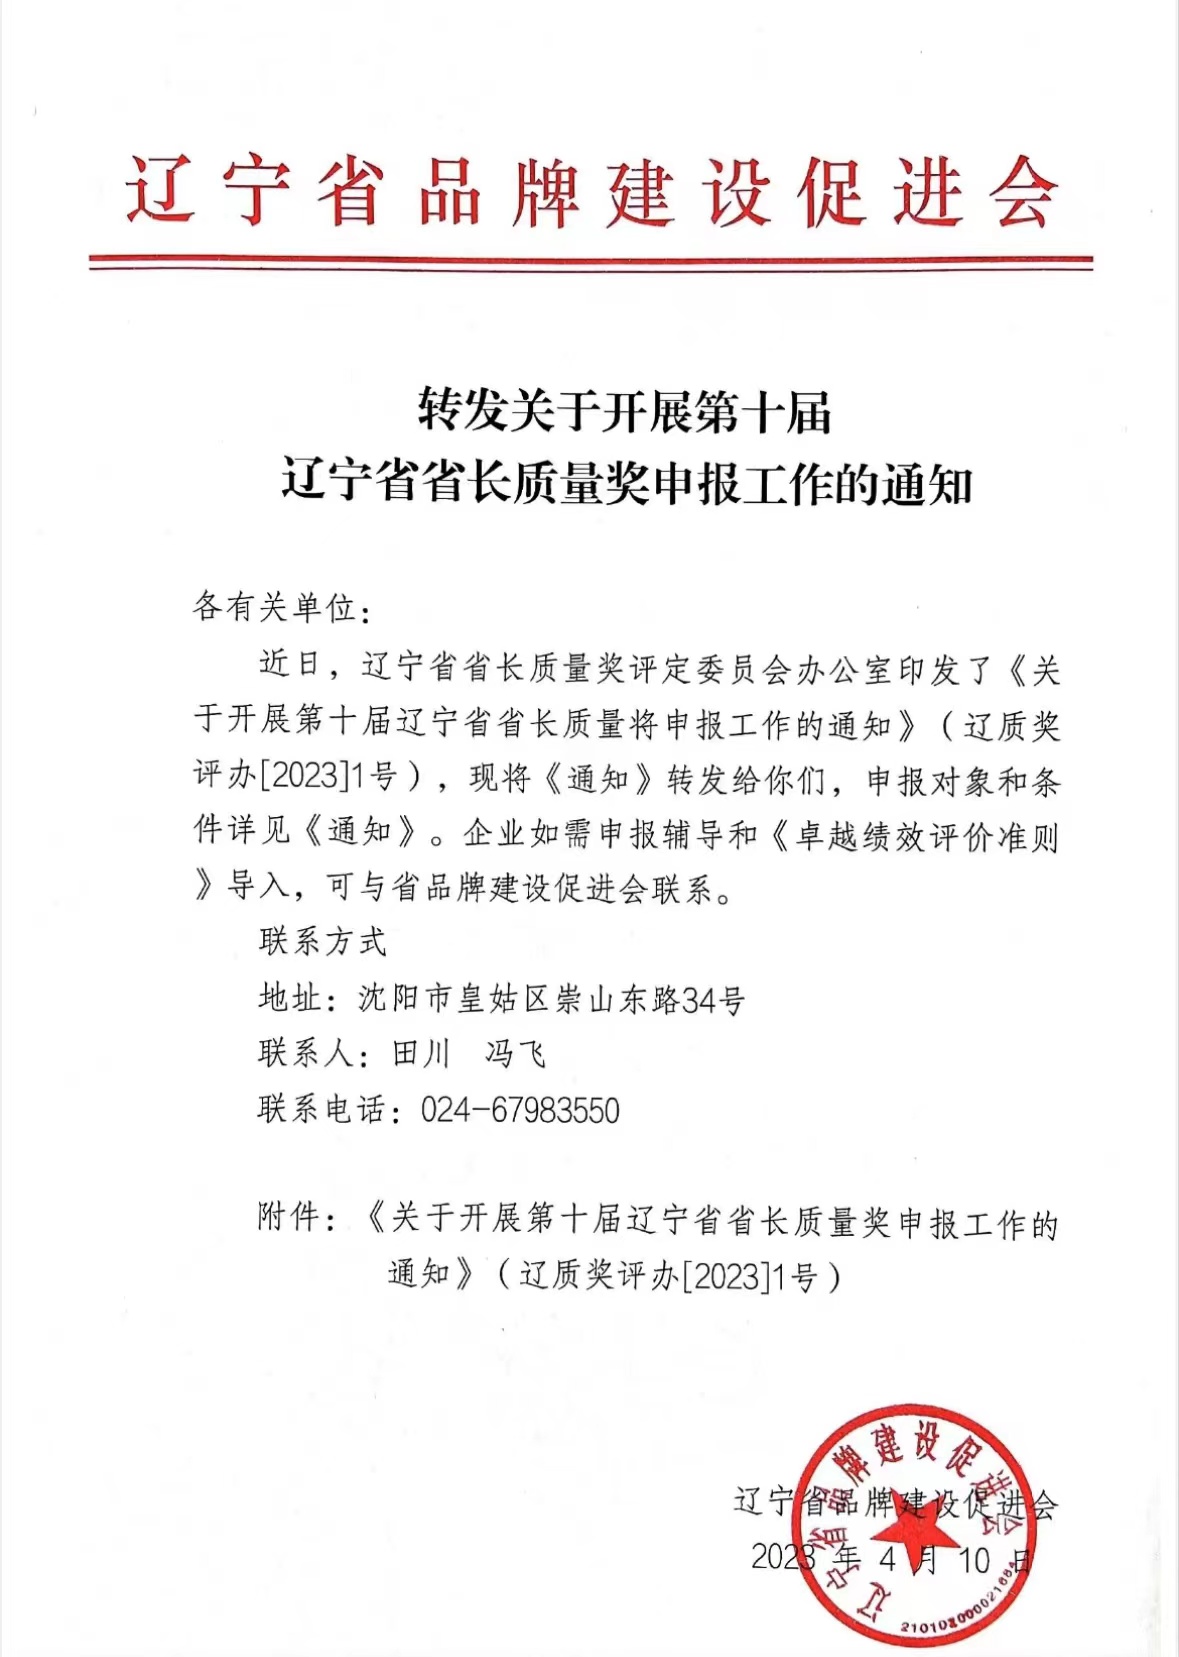 转发关于开展第十届辽宁省省长质量奖申报工作的通知